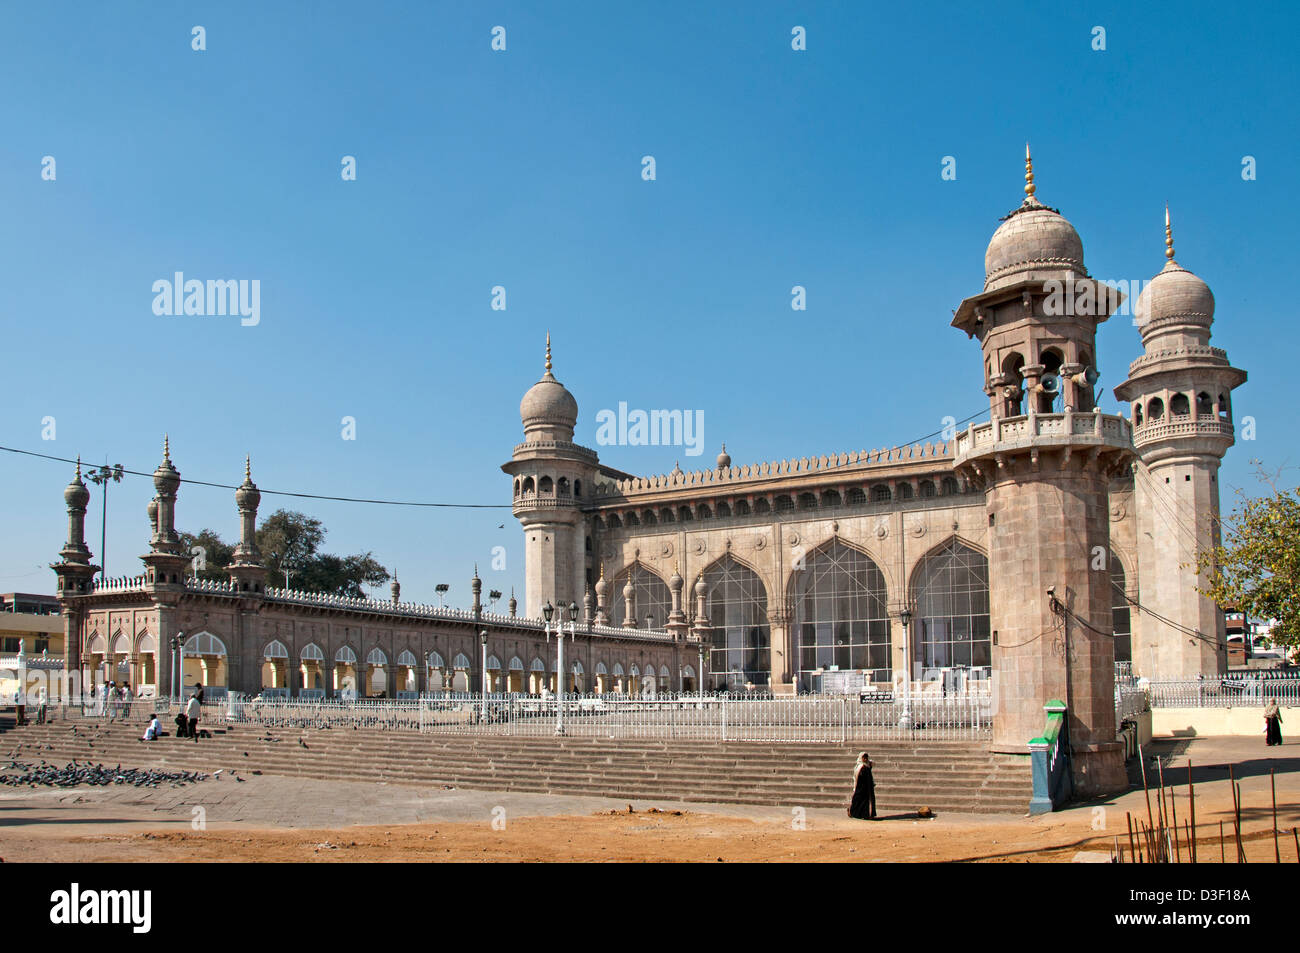 Mekka-Moschee in der Nähe von Charminar Hyderabad Indien Andhra Pradesh Stockfoto